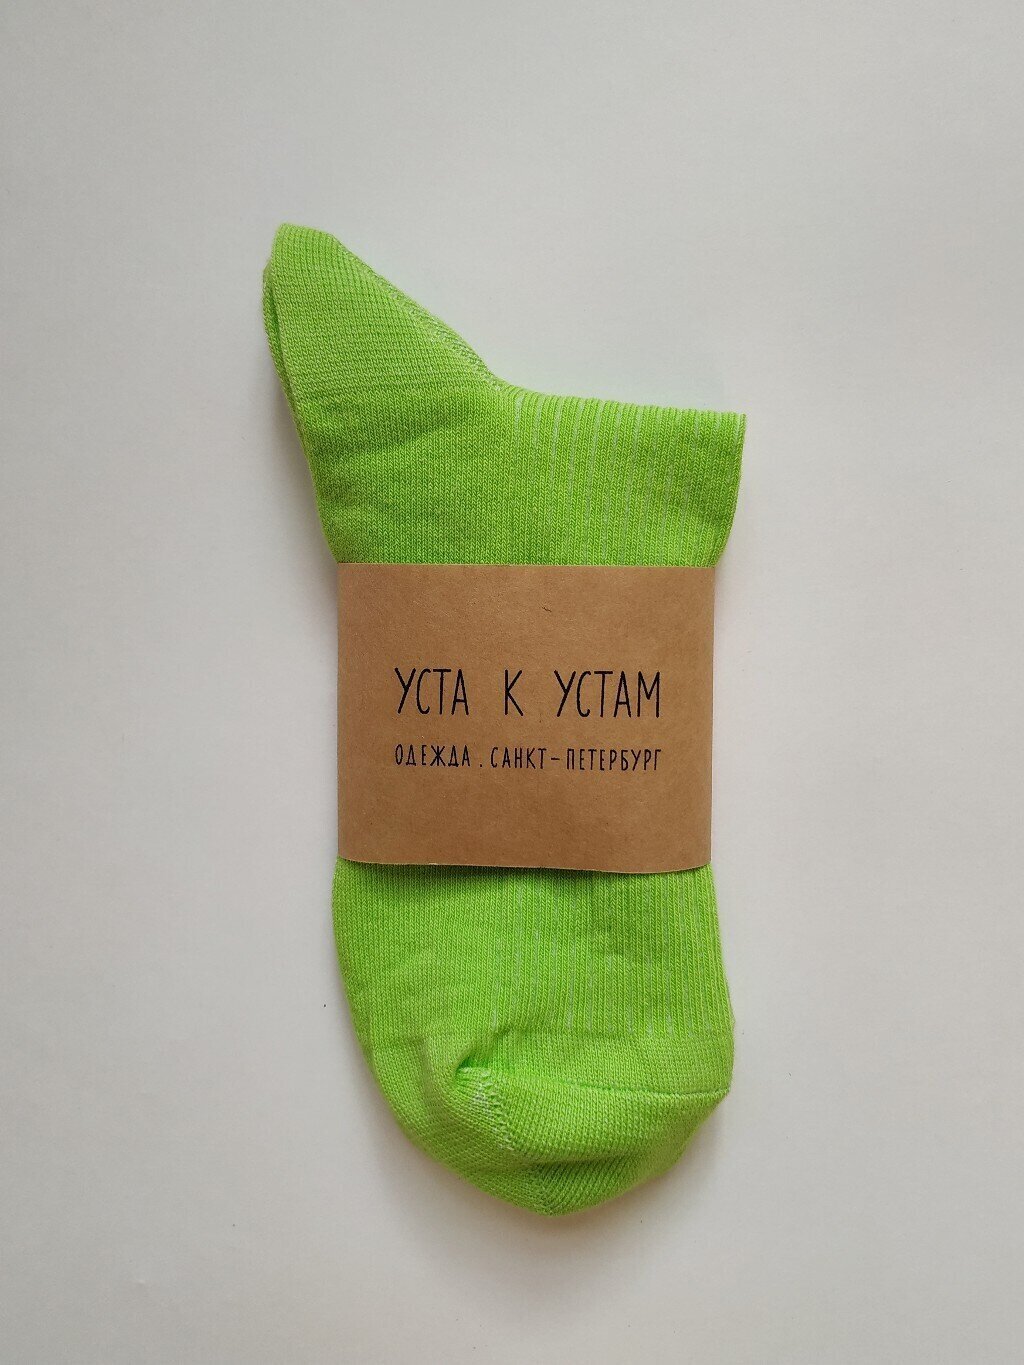 Носки из хлопка короткие ярко-зеленого цвета